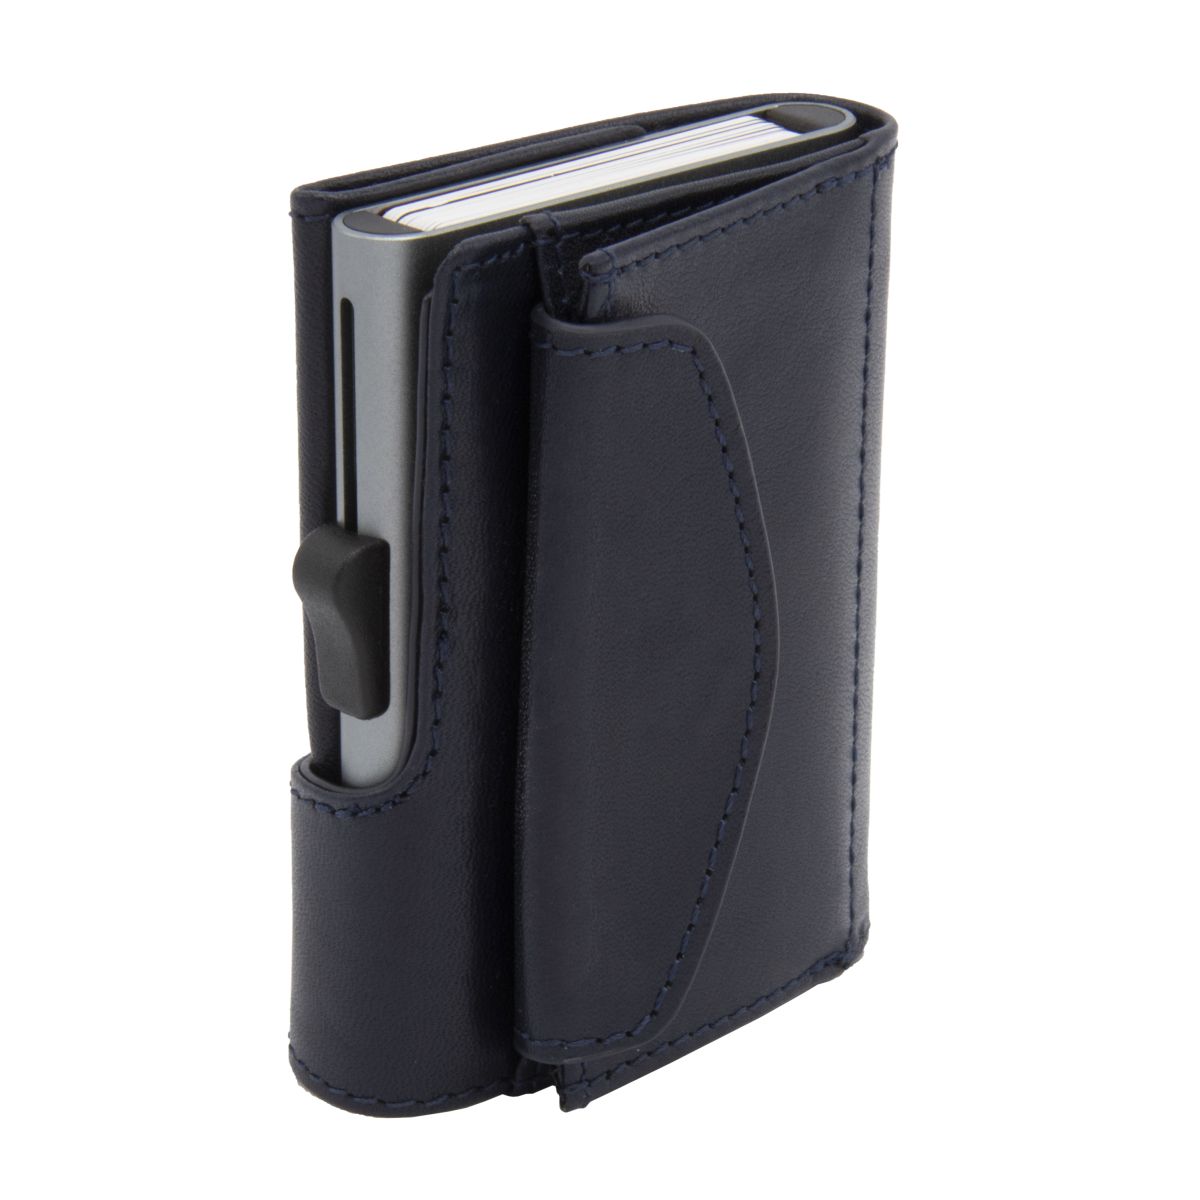 C- Secure Men's Limited Edition Coin Pocket Card Holder Wallet